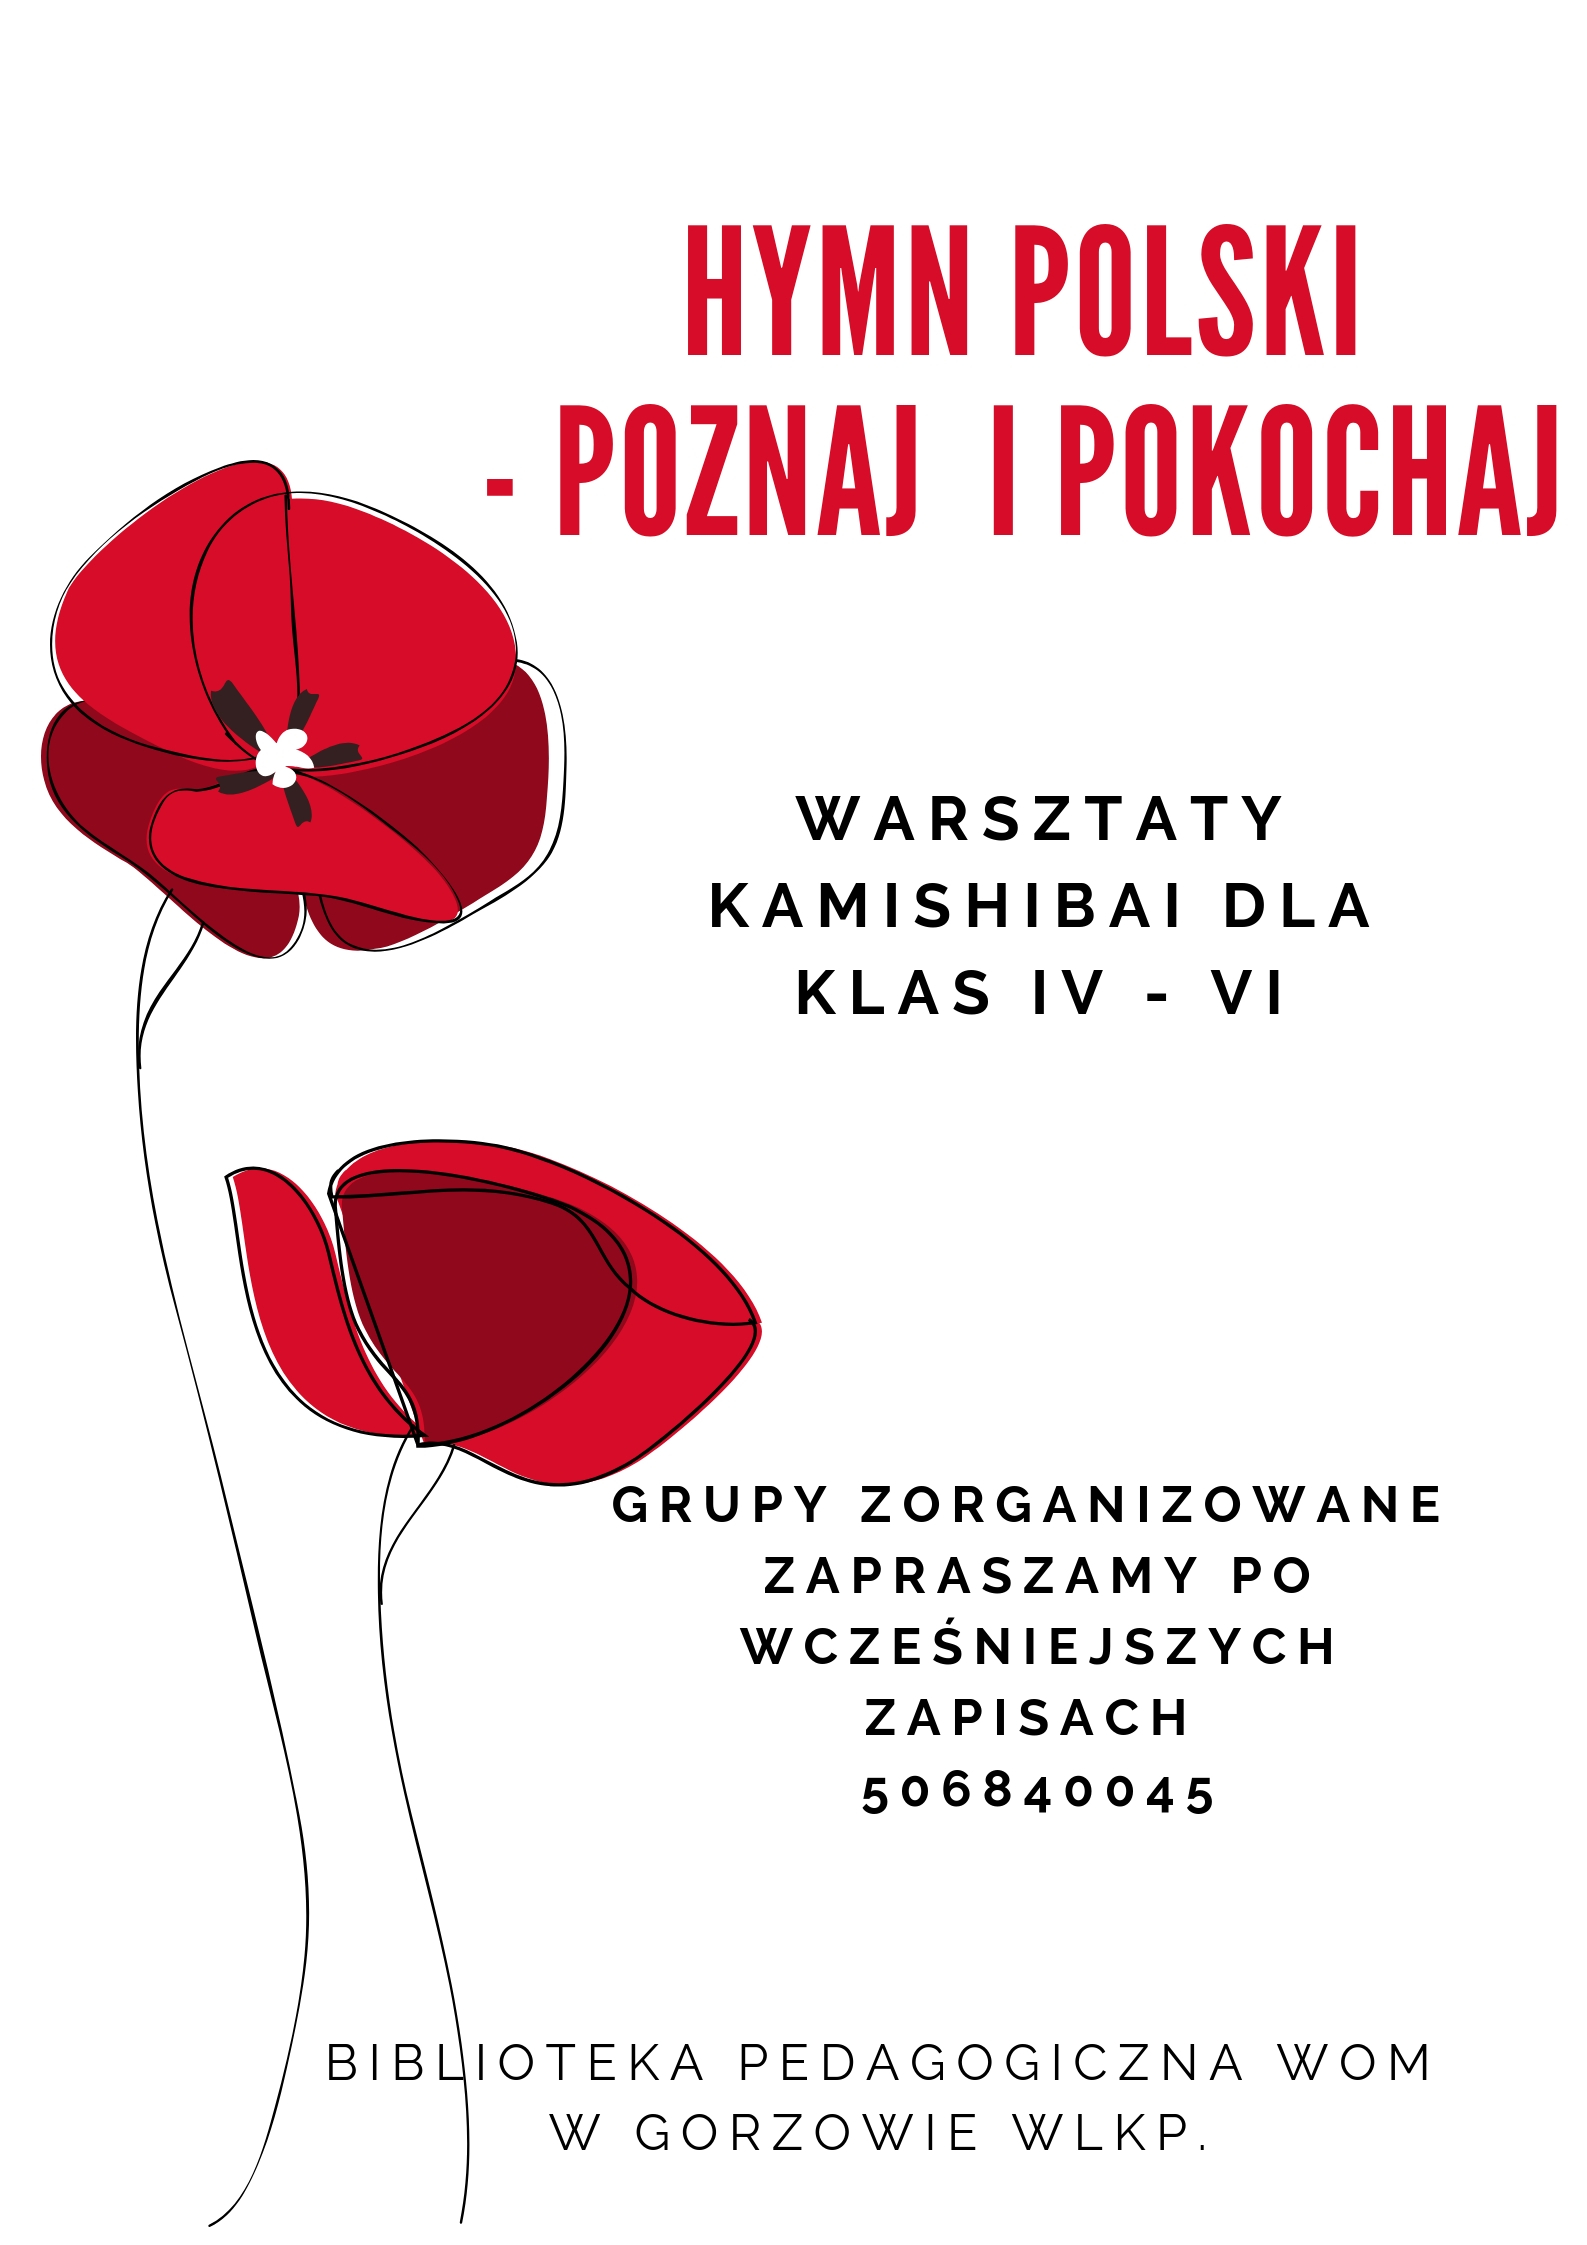 Hymn Polski - poznaj i pokochaj - warsztaty kamishibai